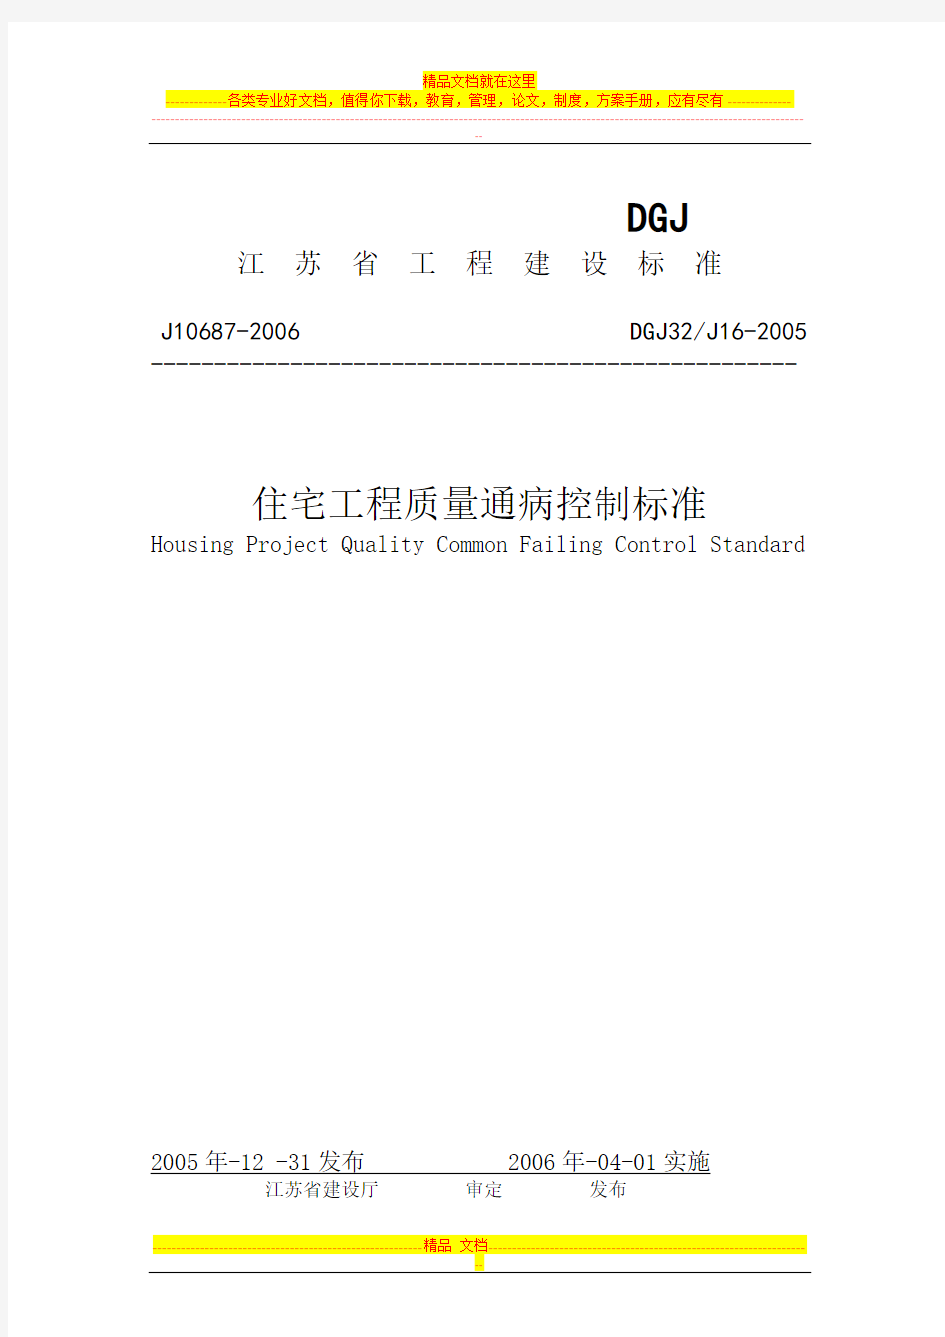 江苏省住宅工程质量通病控制(DGJ32-J16-2005)